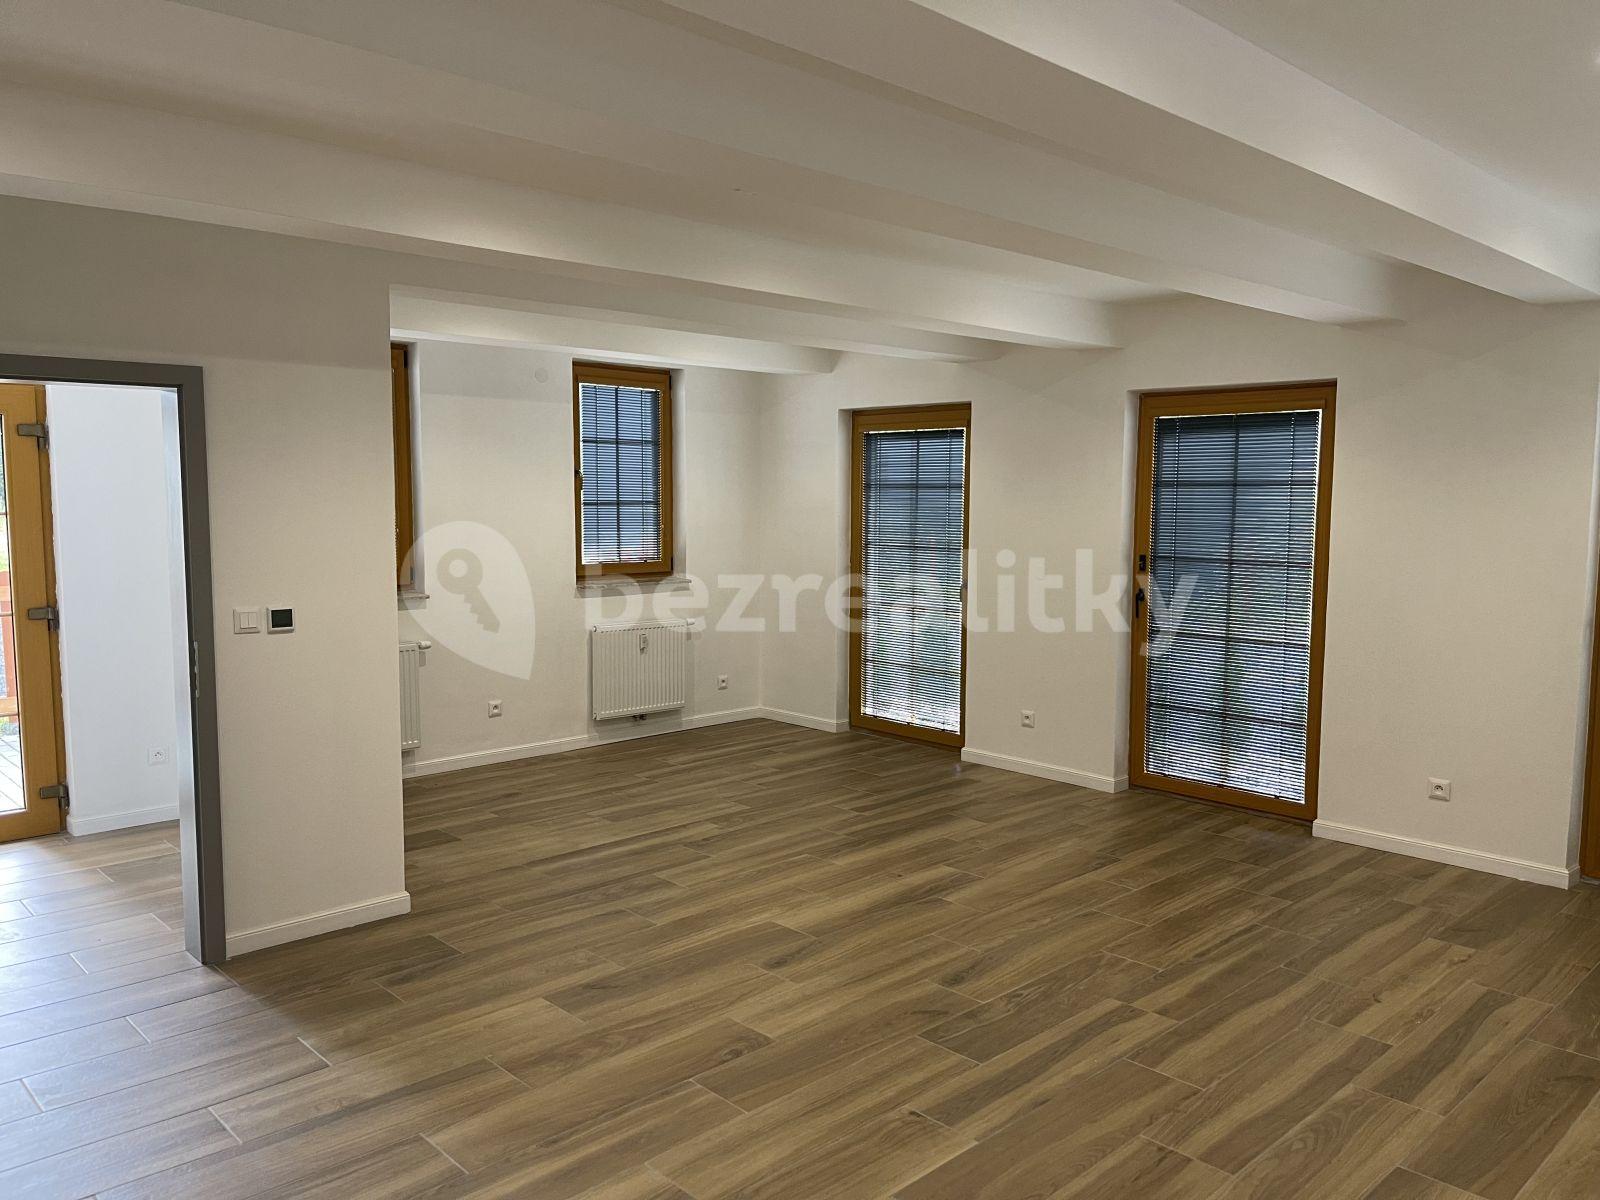 1 bedroom with open-plan kitchen flat for sale, 73 m², Majakovského, Horní Blatná, Karlovarský Region